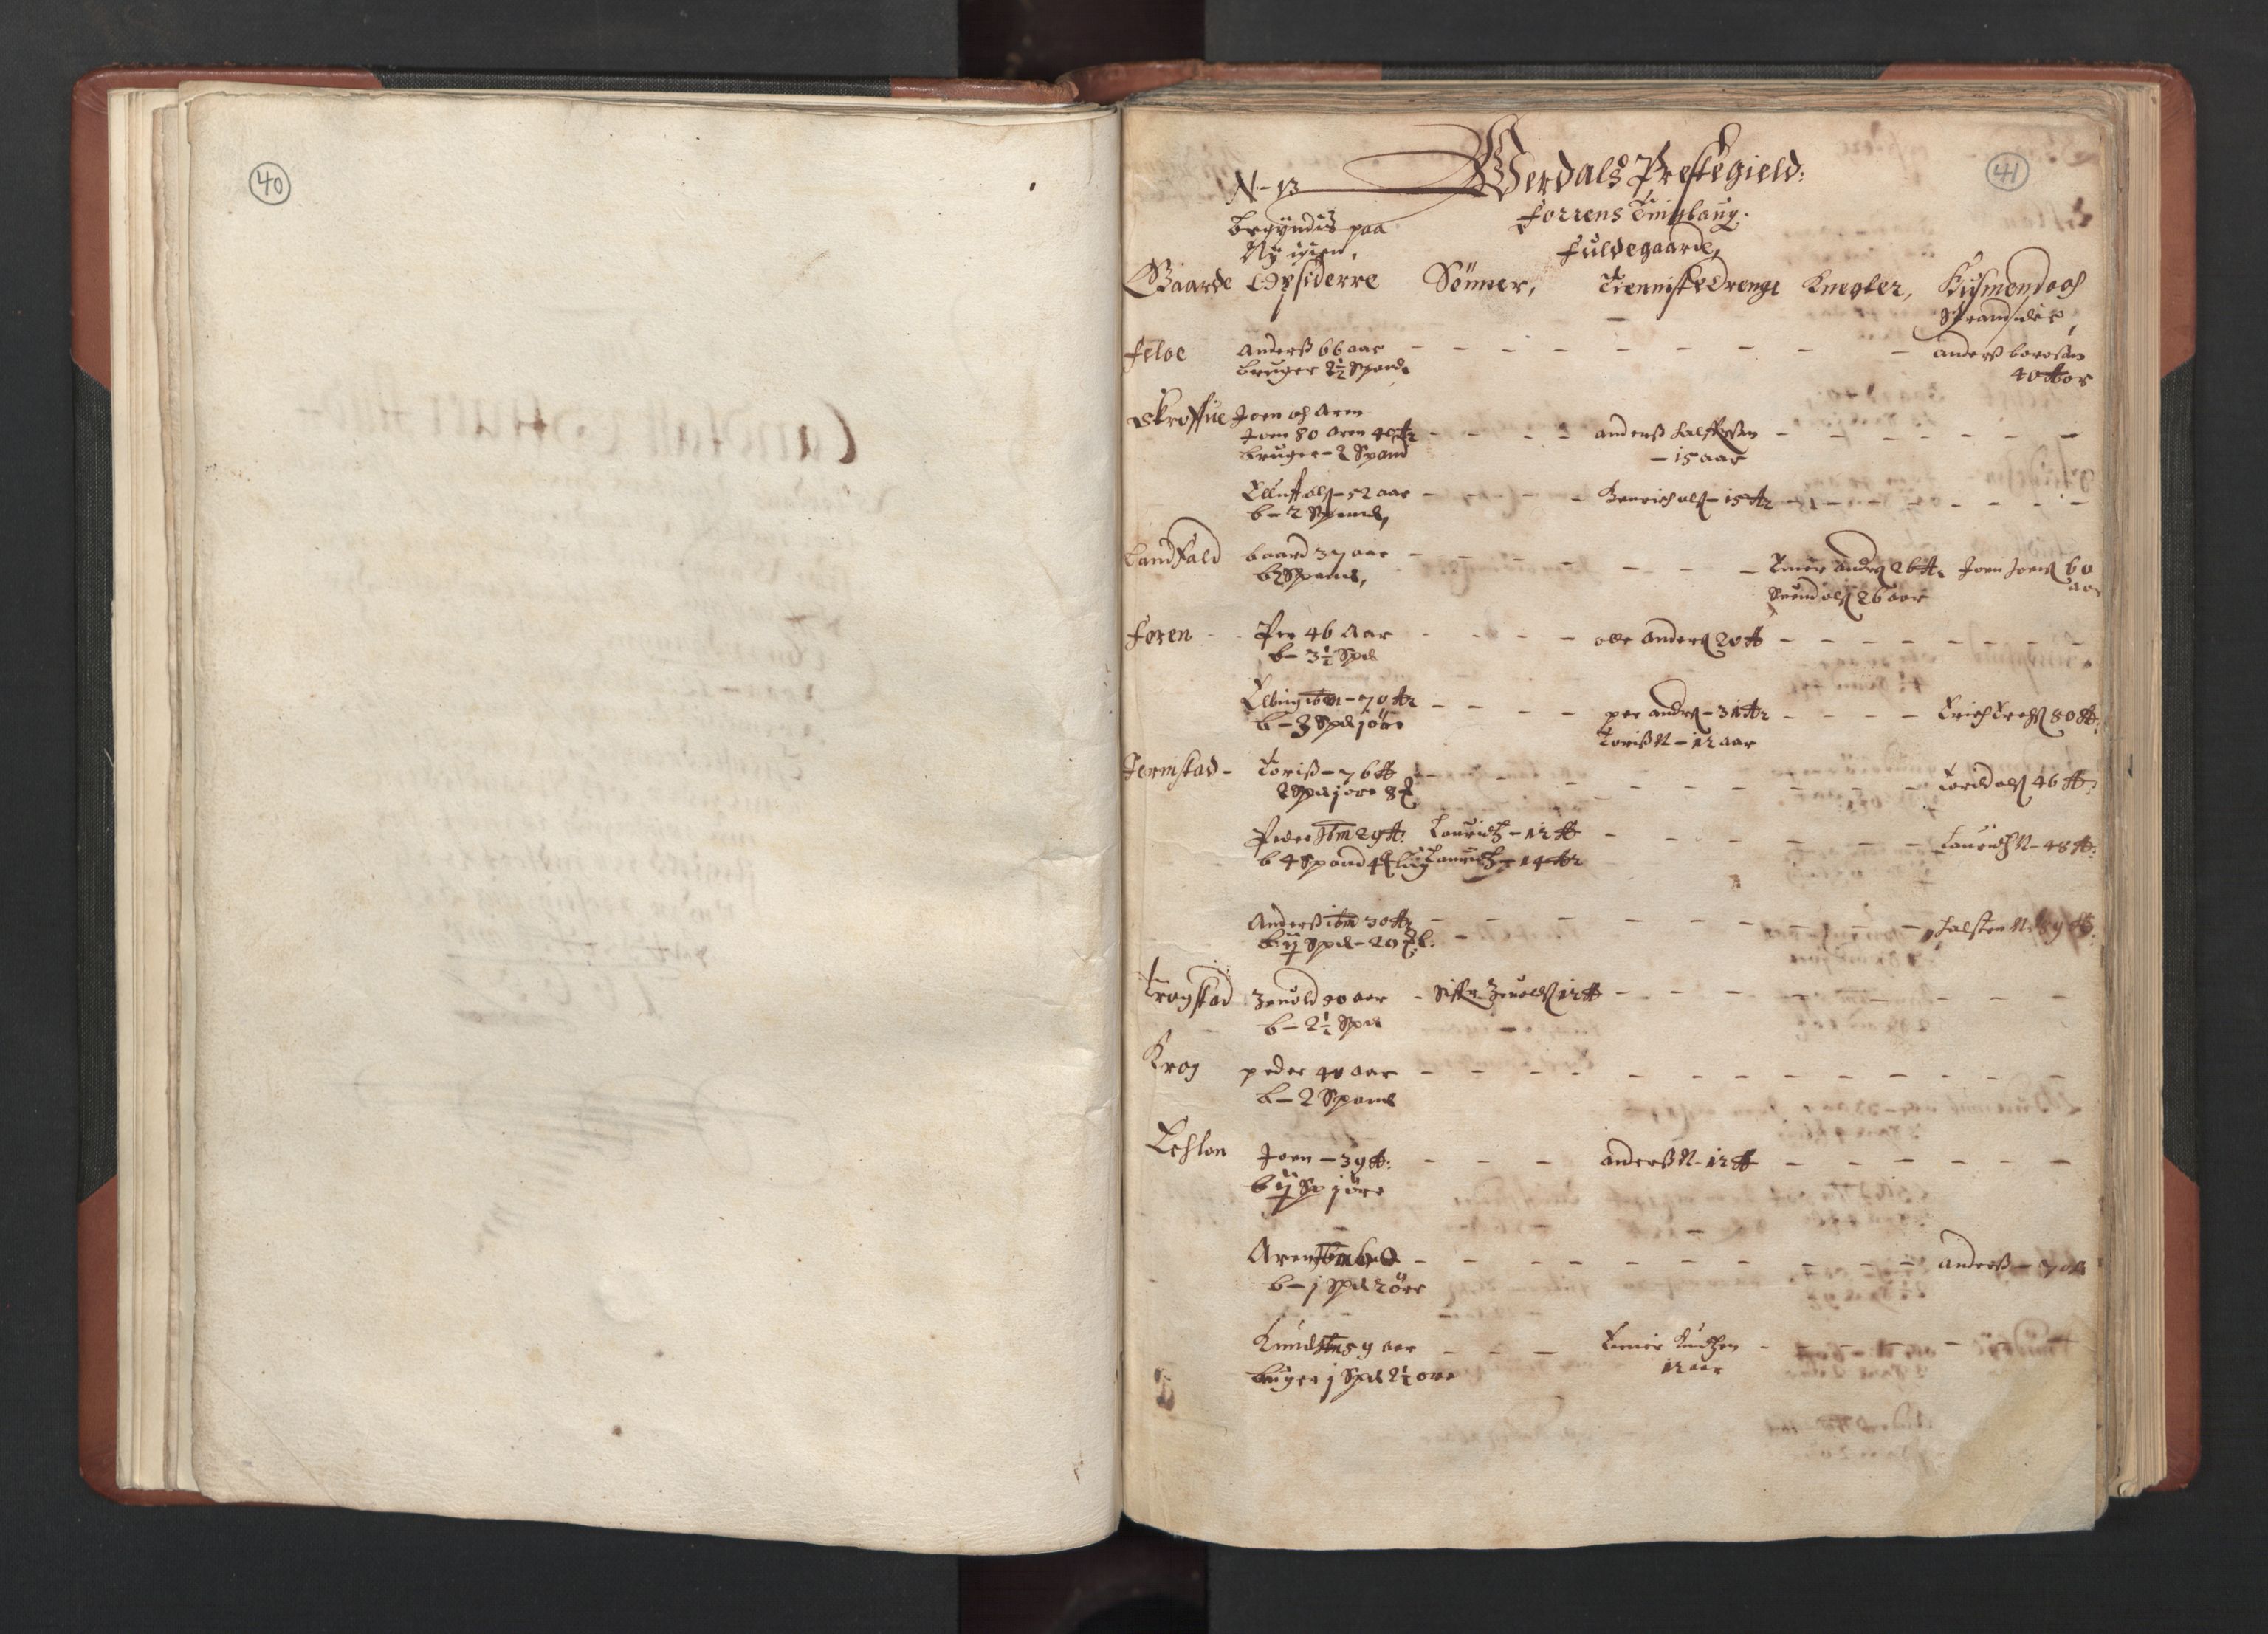 RA, Fogdenes og sorenskrivernes manntall 1664-1666, nr. 19: Fosen fogderi, Inderøy fogderi, Selbu fogderi, Namdal fogderi og Stjørdal fogderi, 1664-1665, s. 40-41